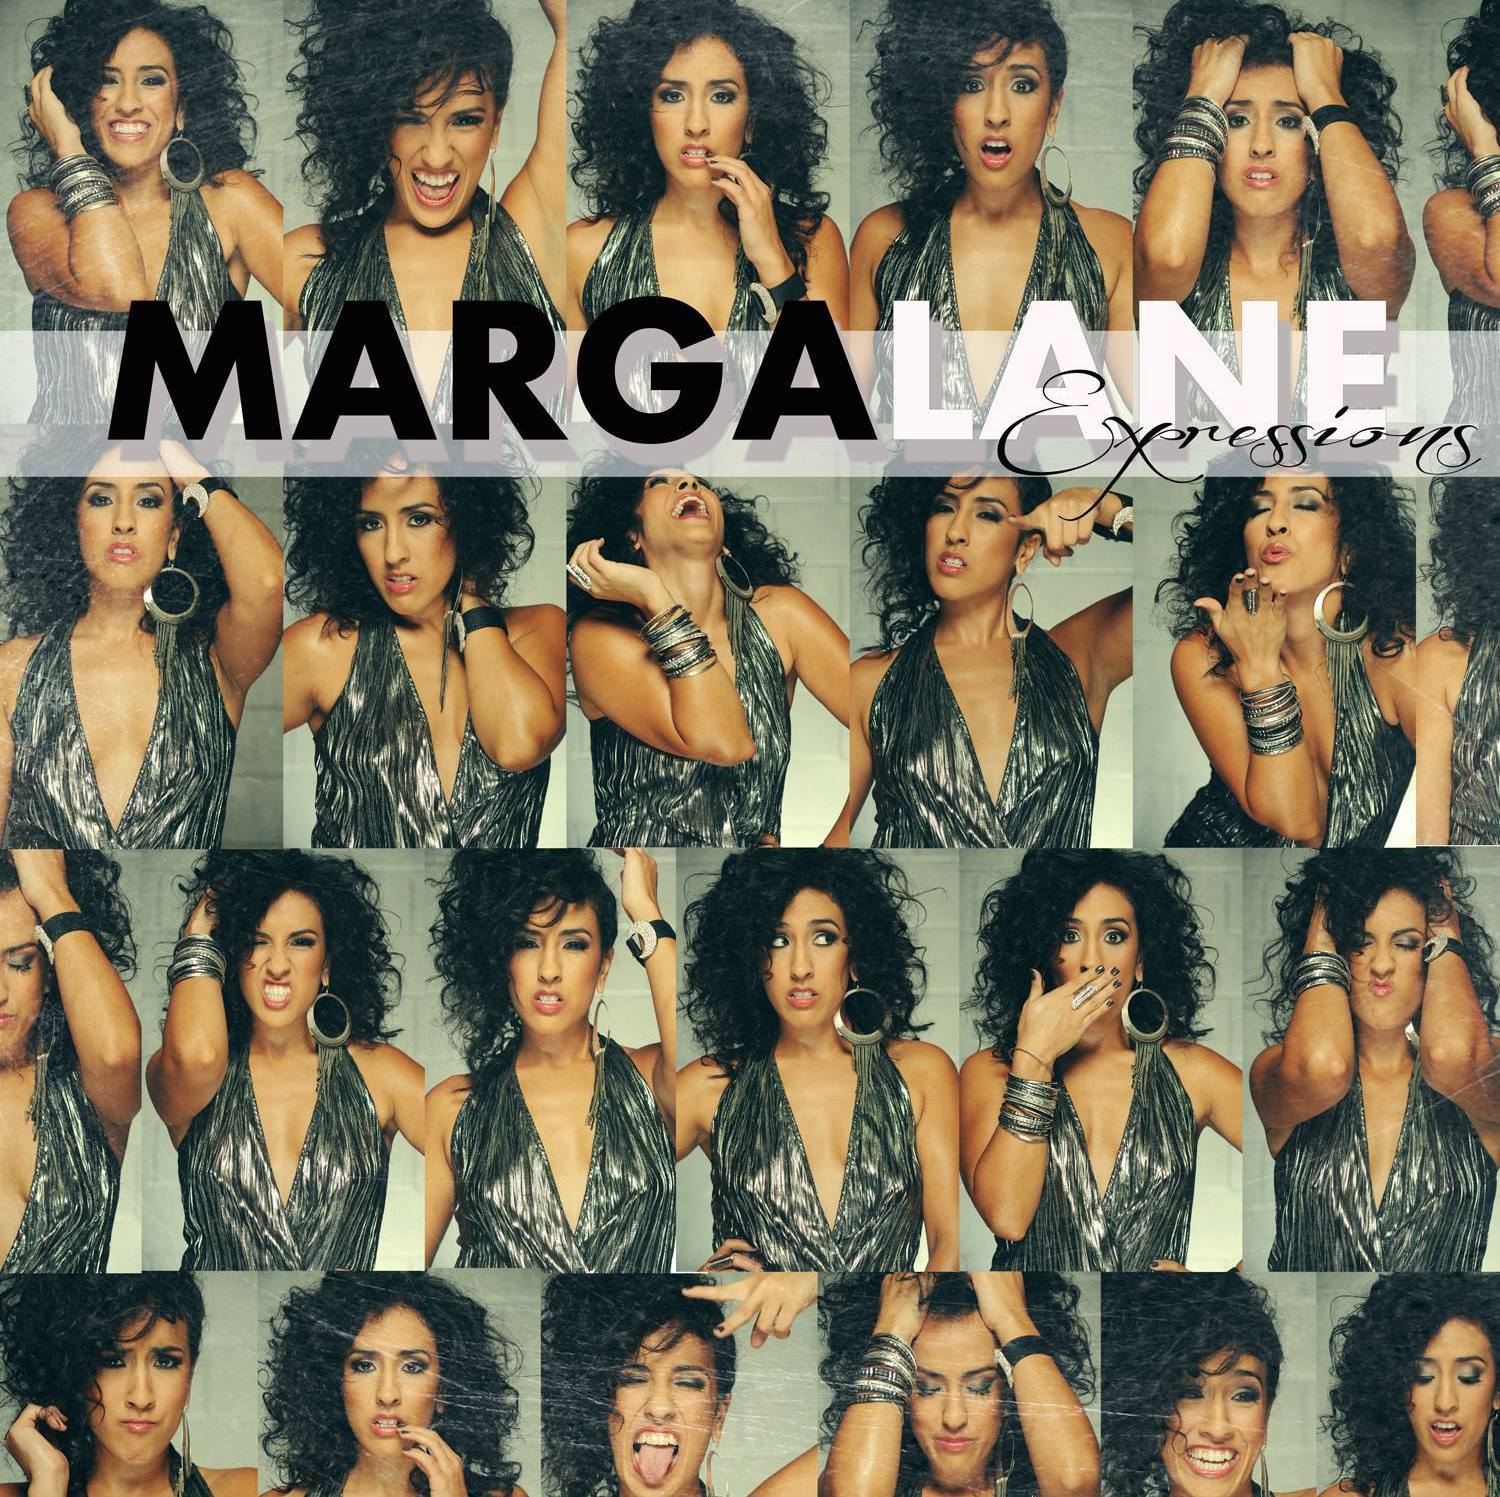  Marga Lane – Expressions